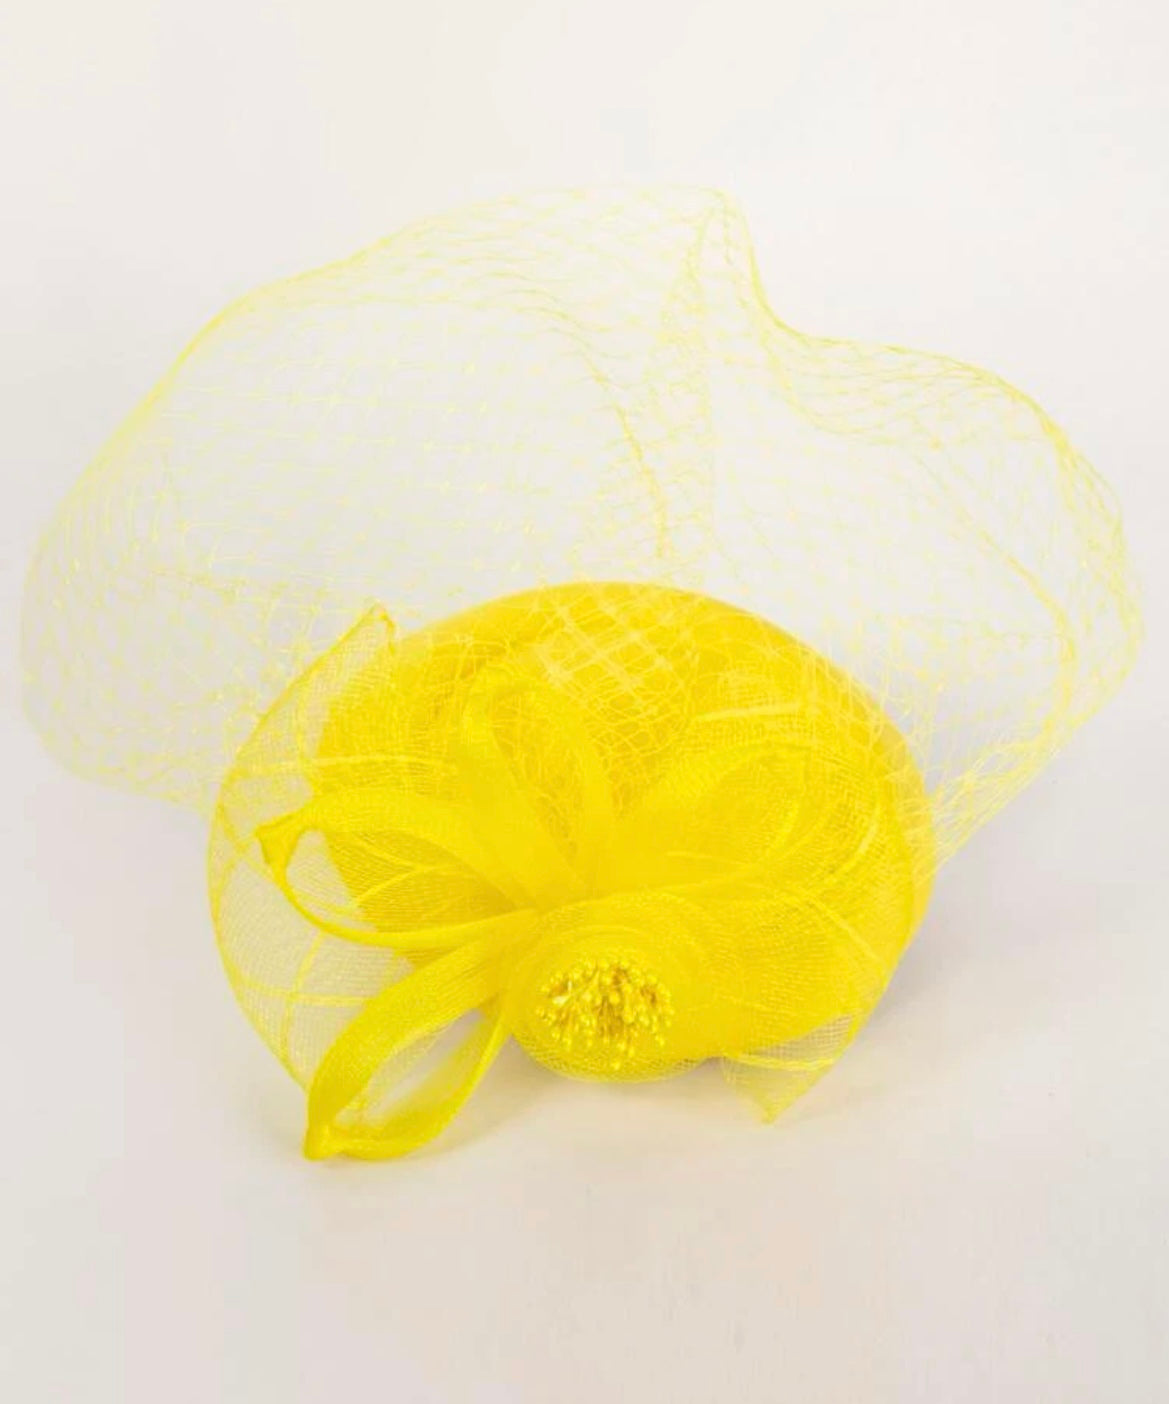 Ribbon Embellished Fascinator Hat - Yellow